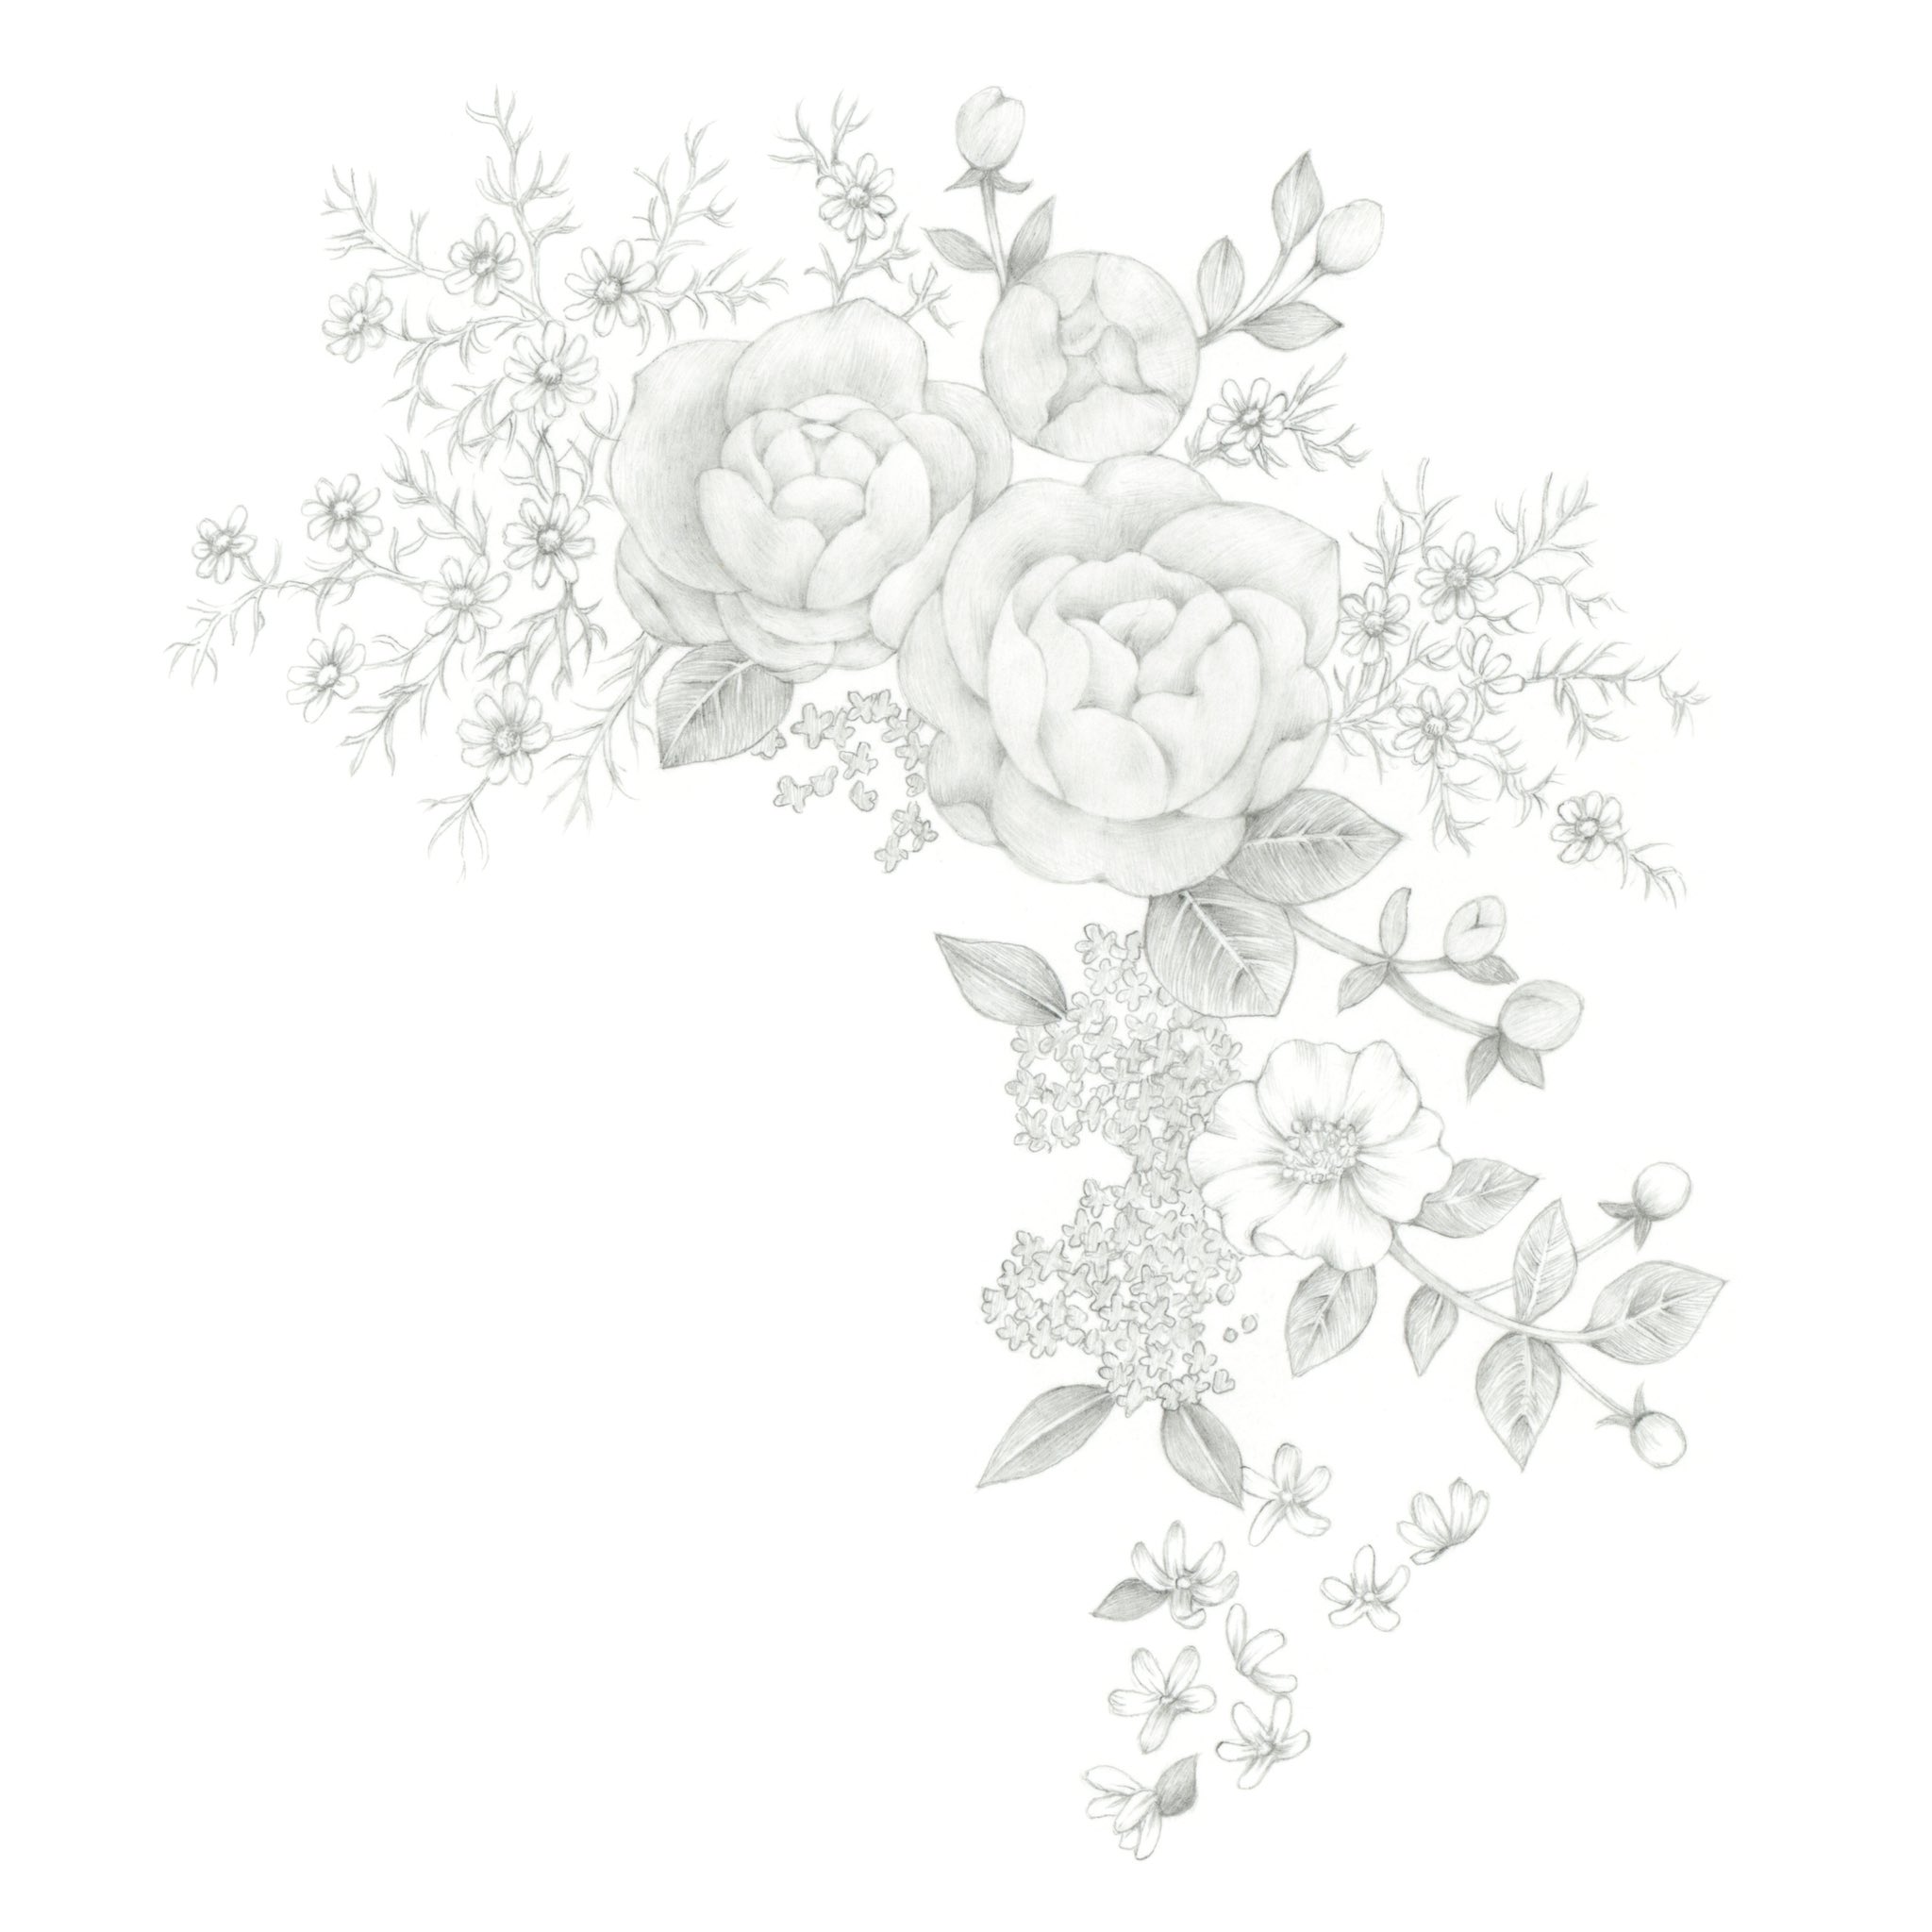 中上あゆみ 少し前ですが の初春の期間にフローラノーティスジルスチュアート Flora Notis Jill Stuartさんの限定パッケージのイラストレーションを担当しました バラなどのお花をブーケぽく描きました Design Packagedesign Illustration